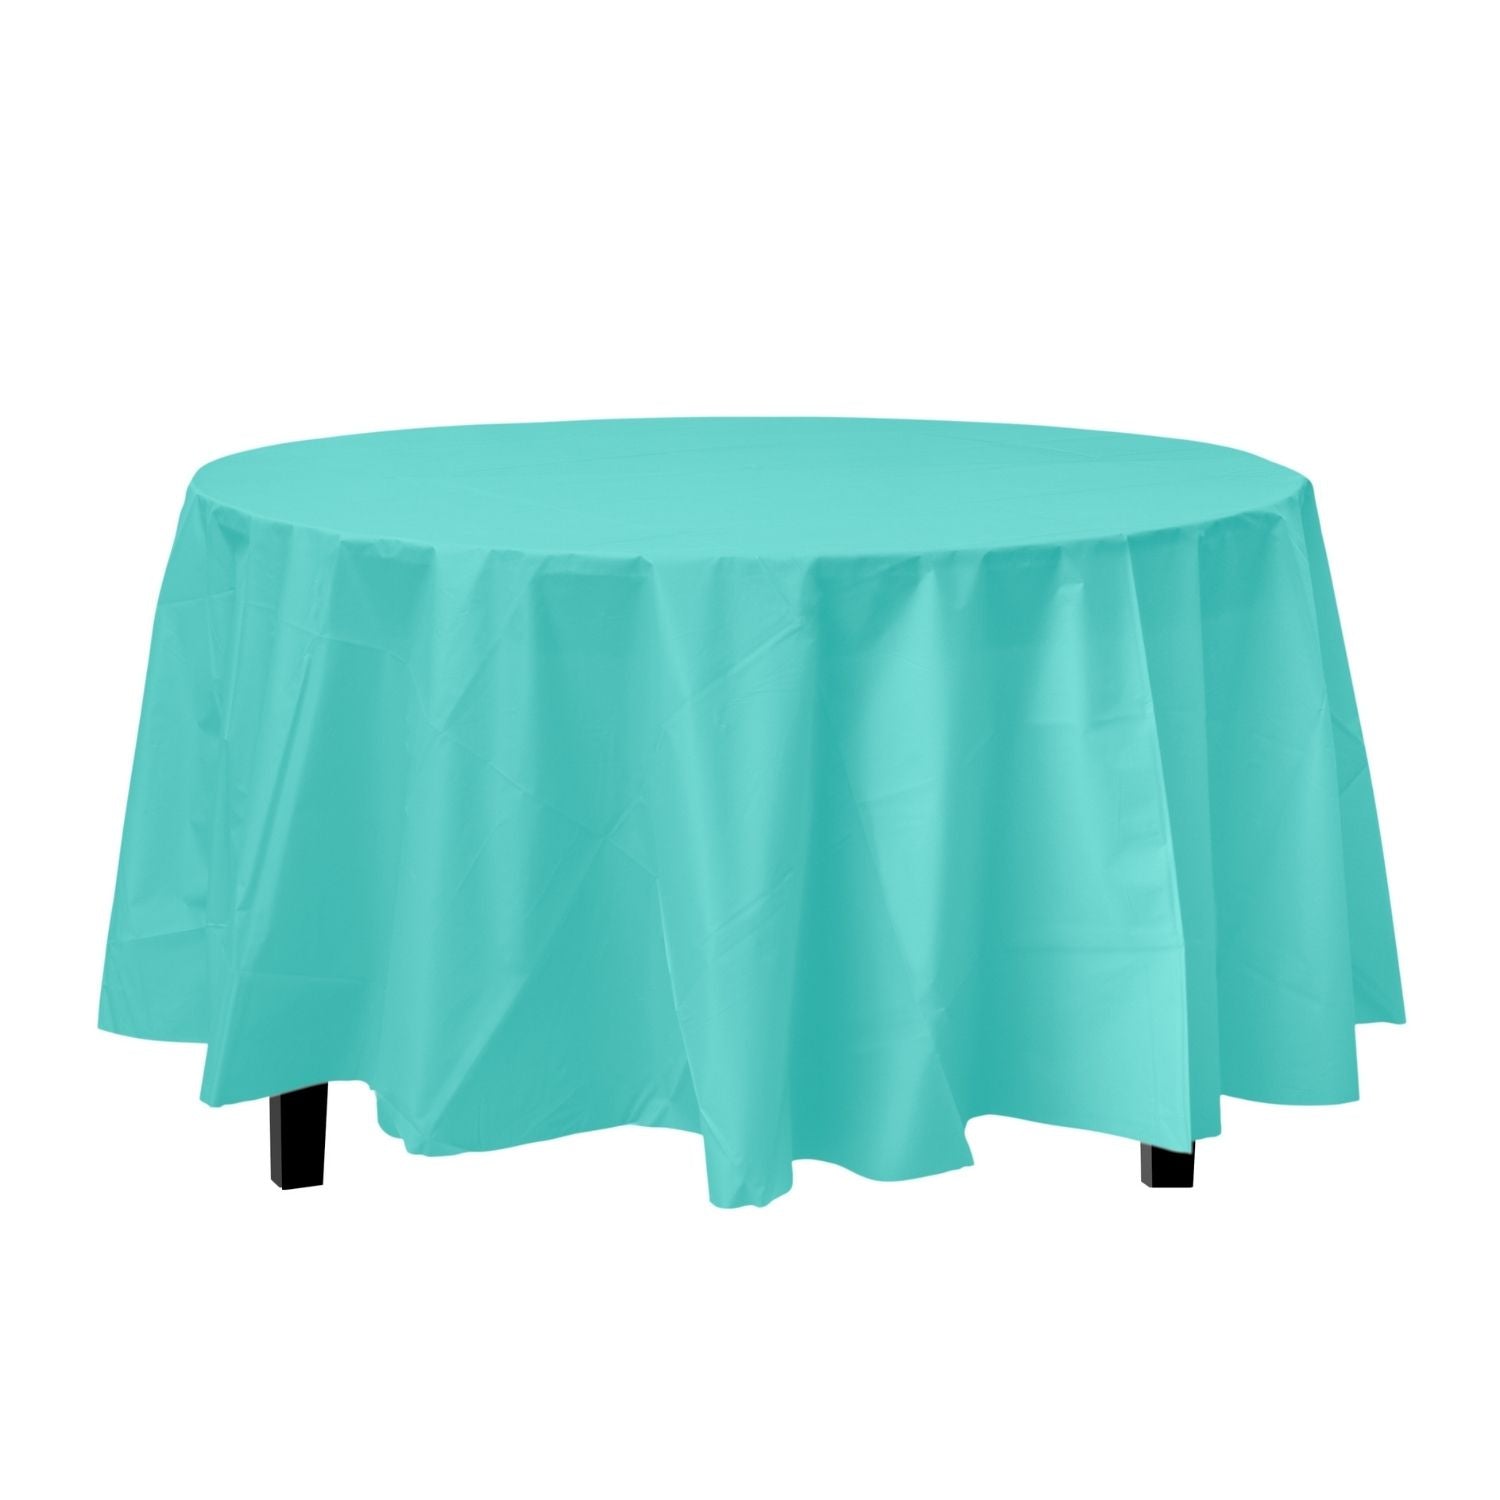 Aqua Round Plastic Tablecloth | 48 Count